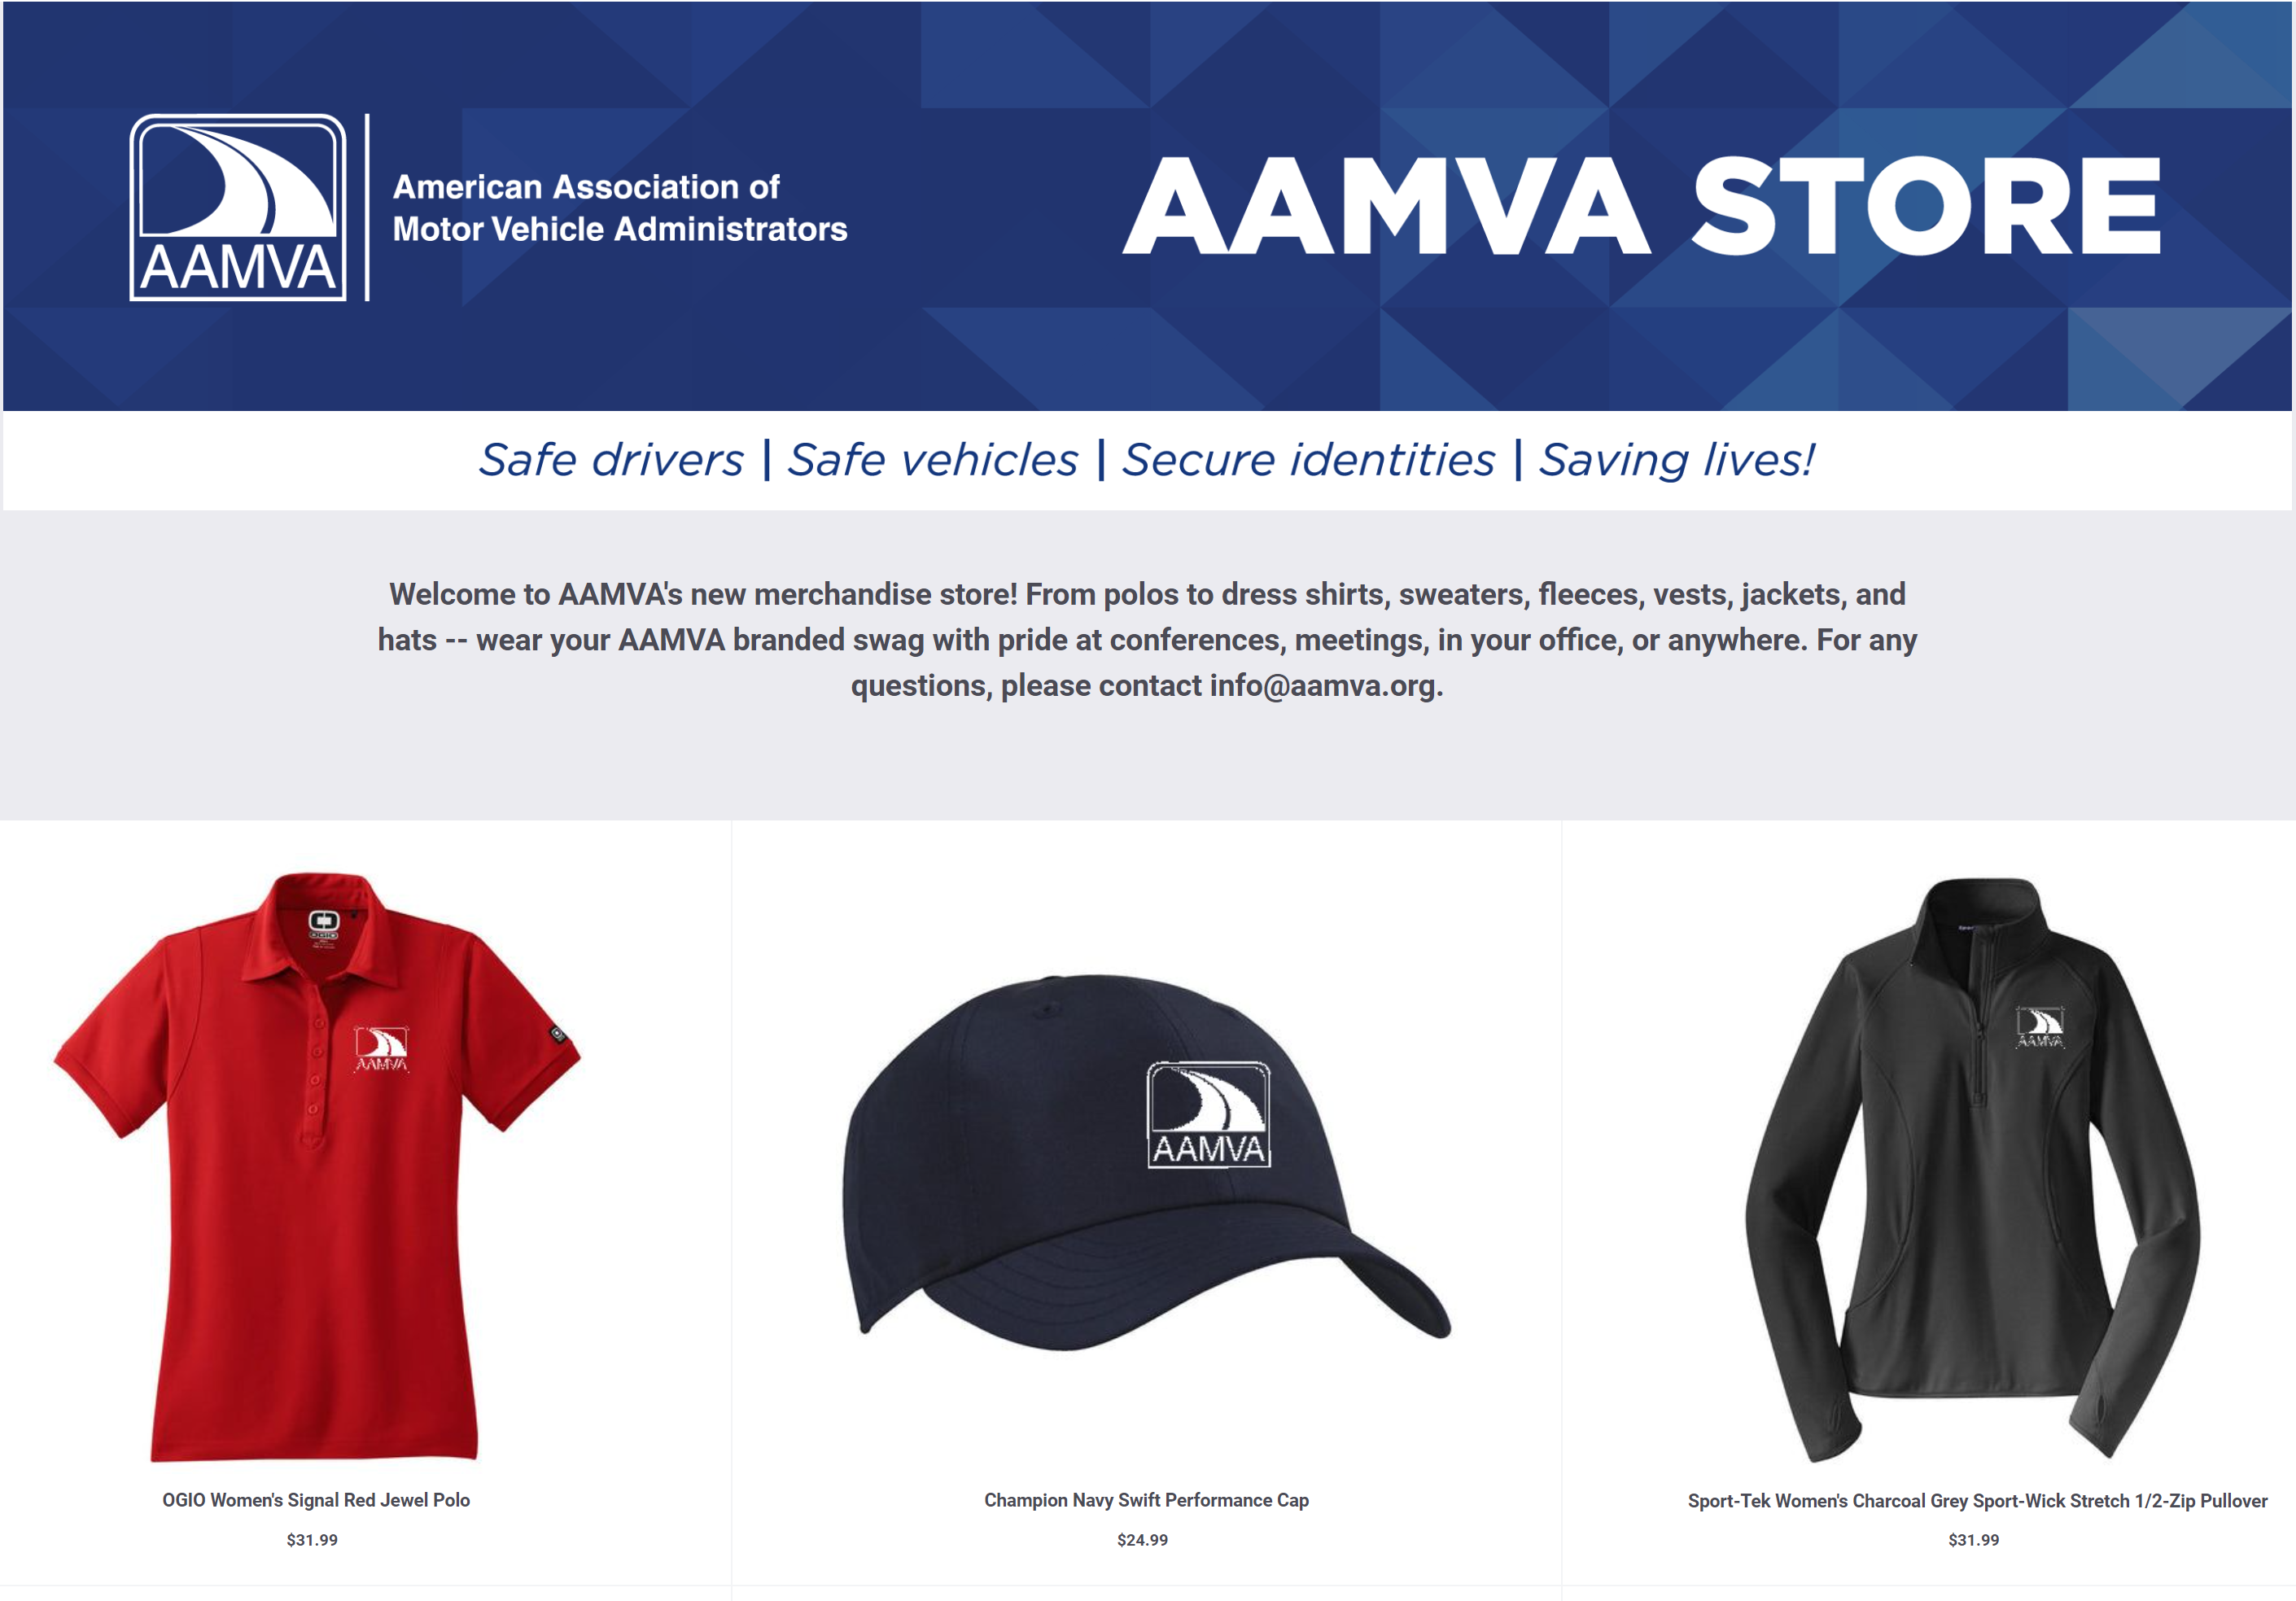 AAMVA Store